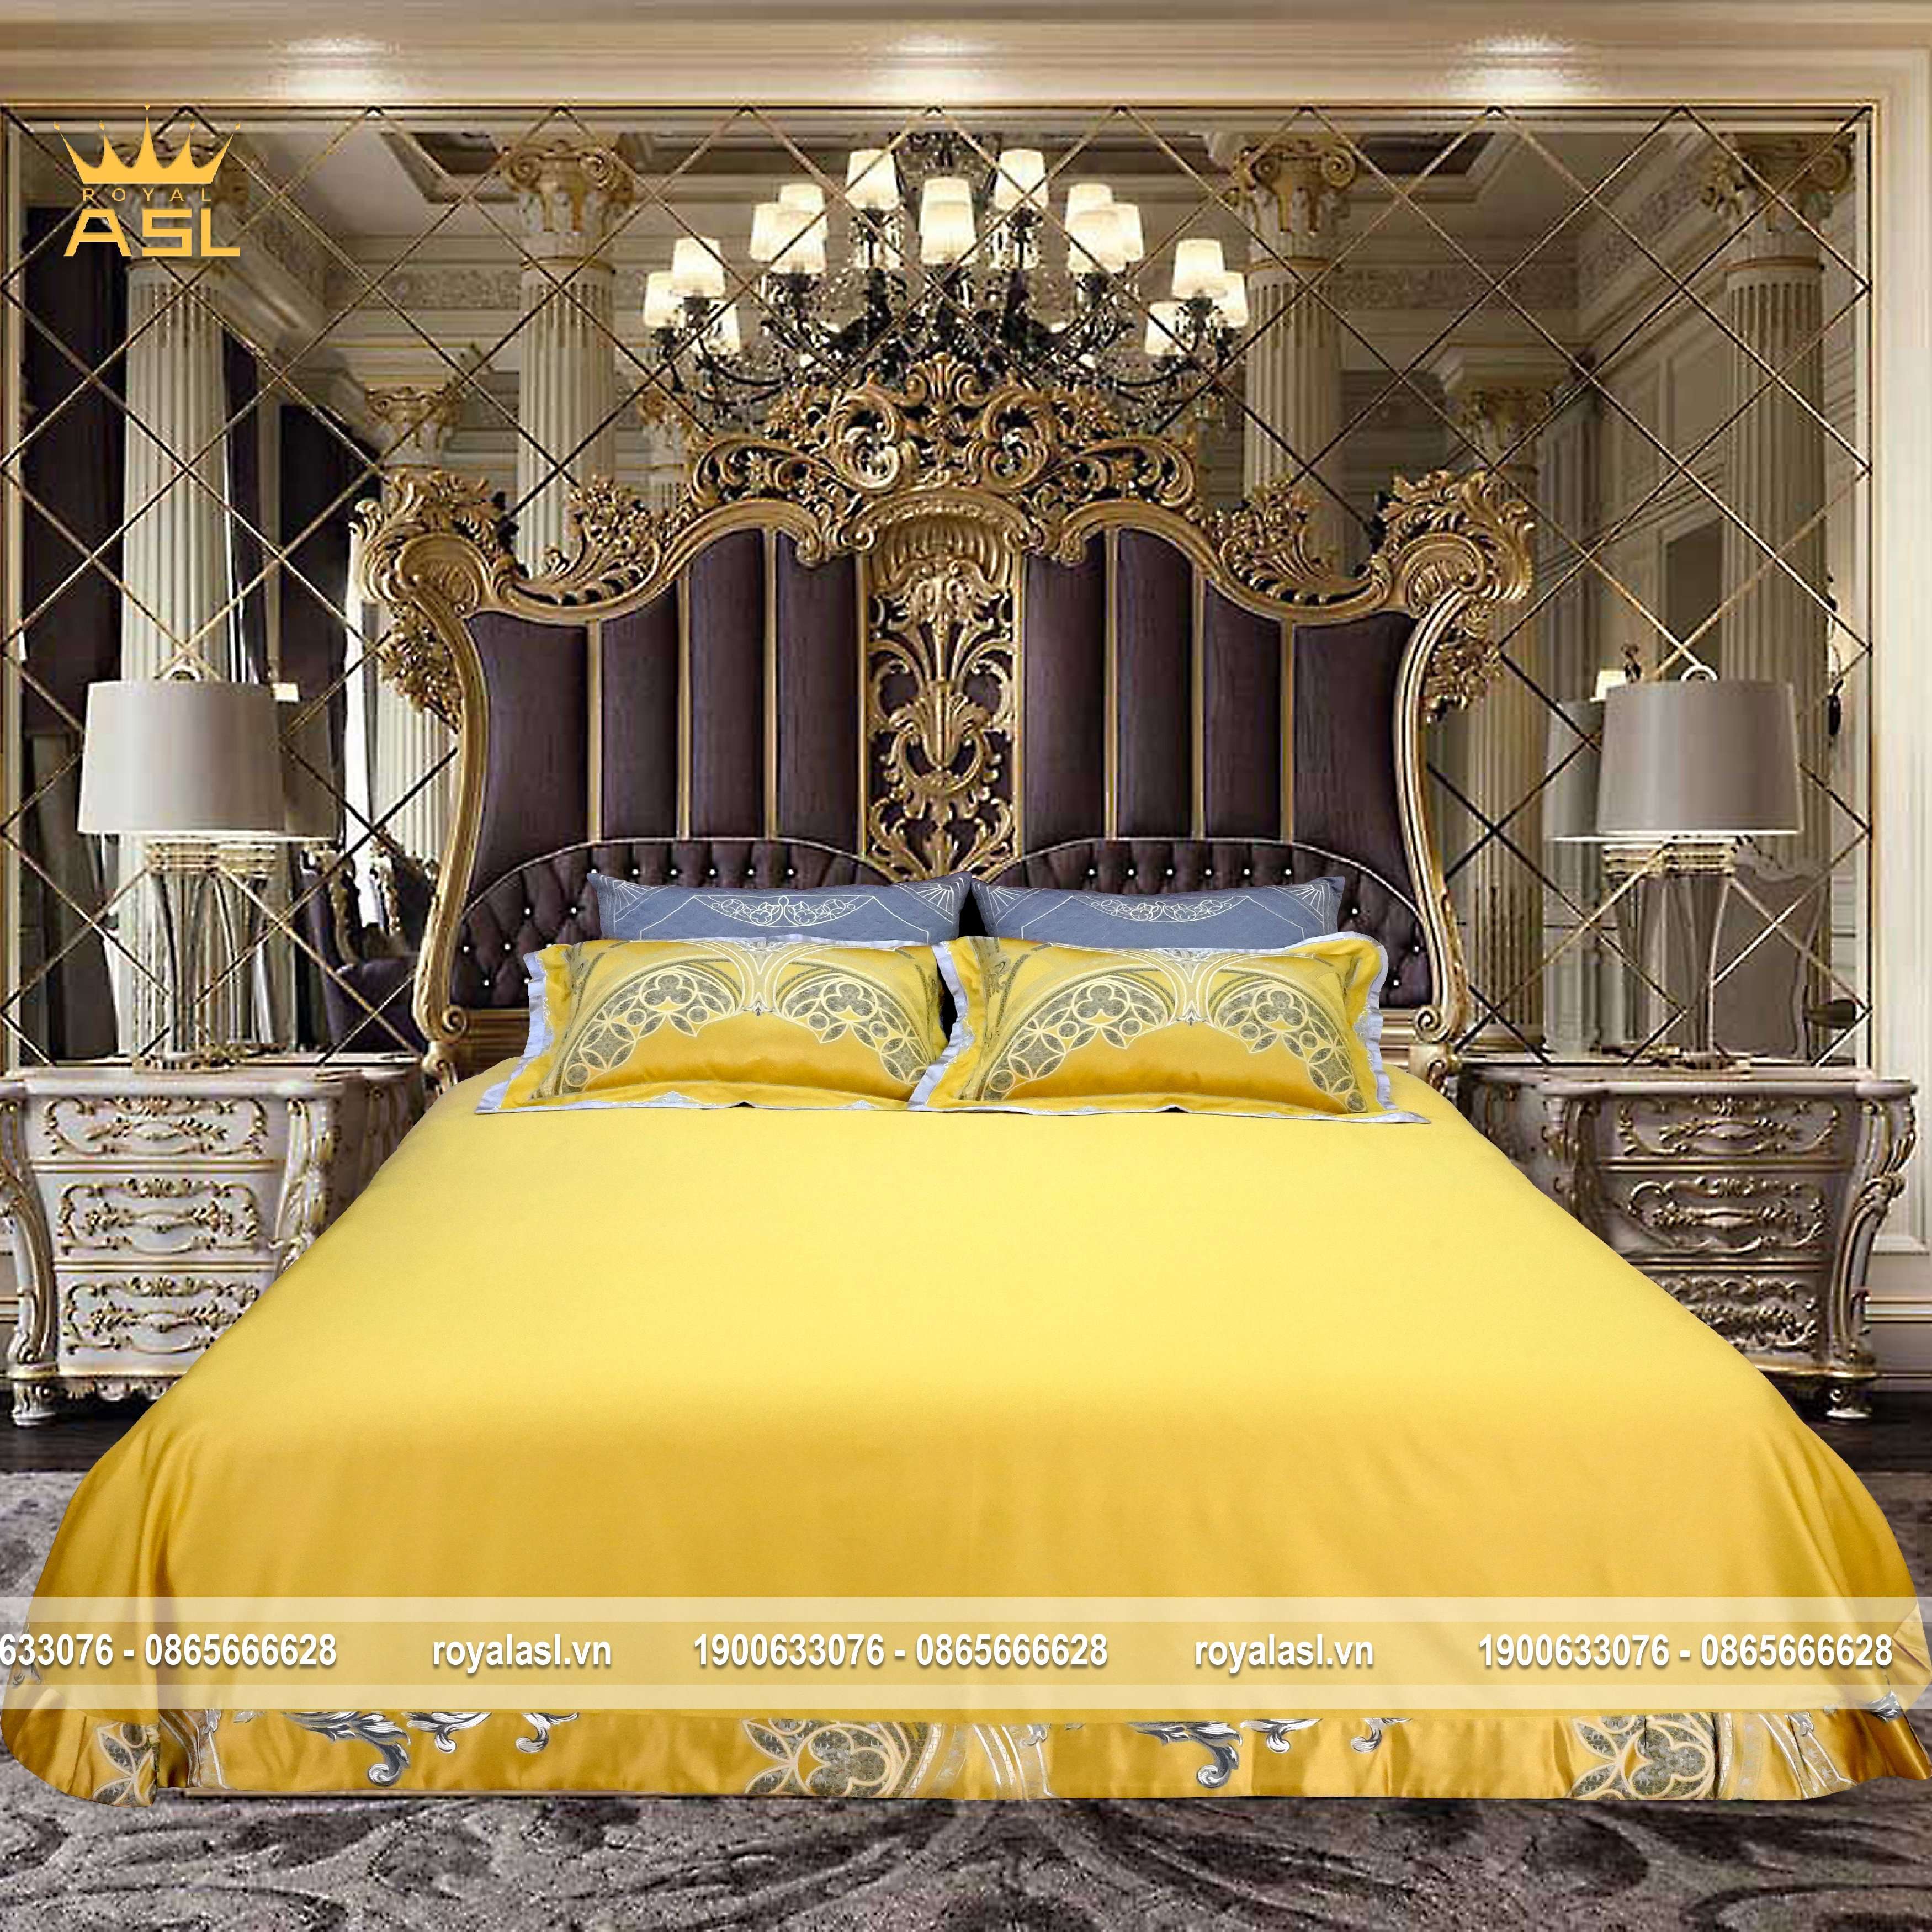 Bộ Drap Gối 6 món Satin Gấm Lụa Royal Gold phong cách Hoàng gia- Họa Tiết Hoa Văn Thêu Cách Điệu –Màu Vàng Xám -DR0114